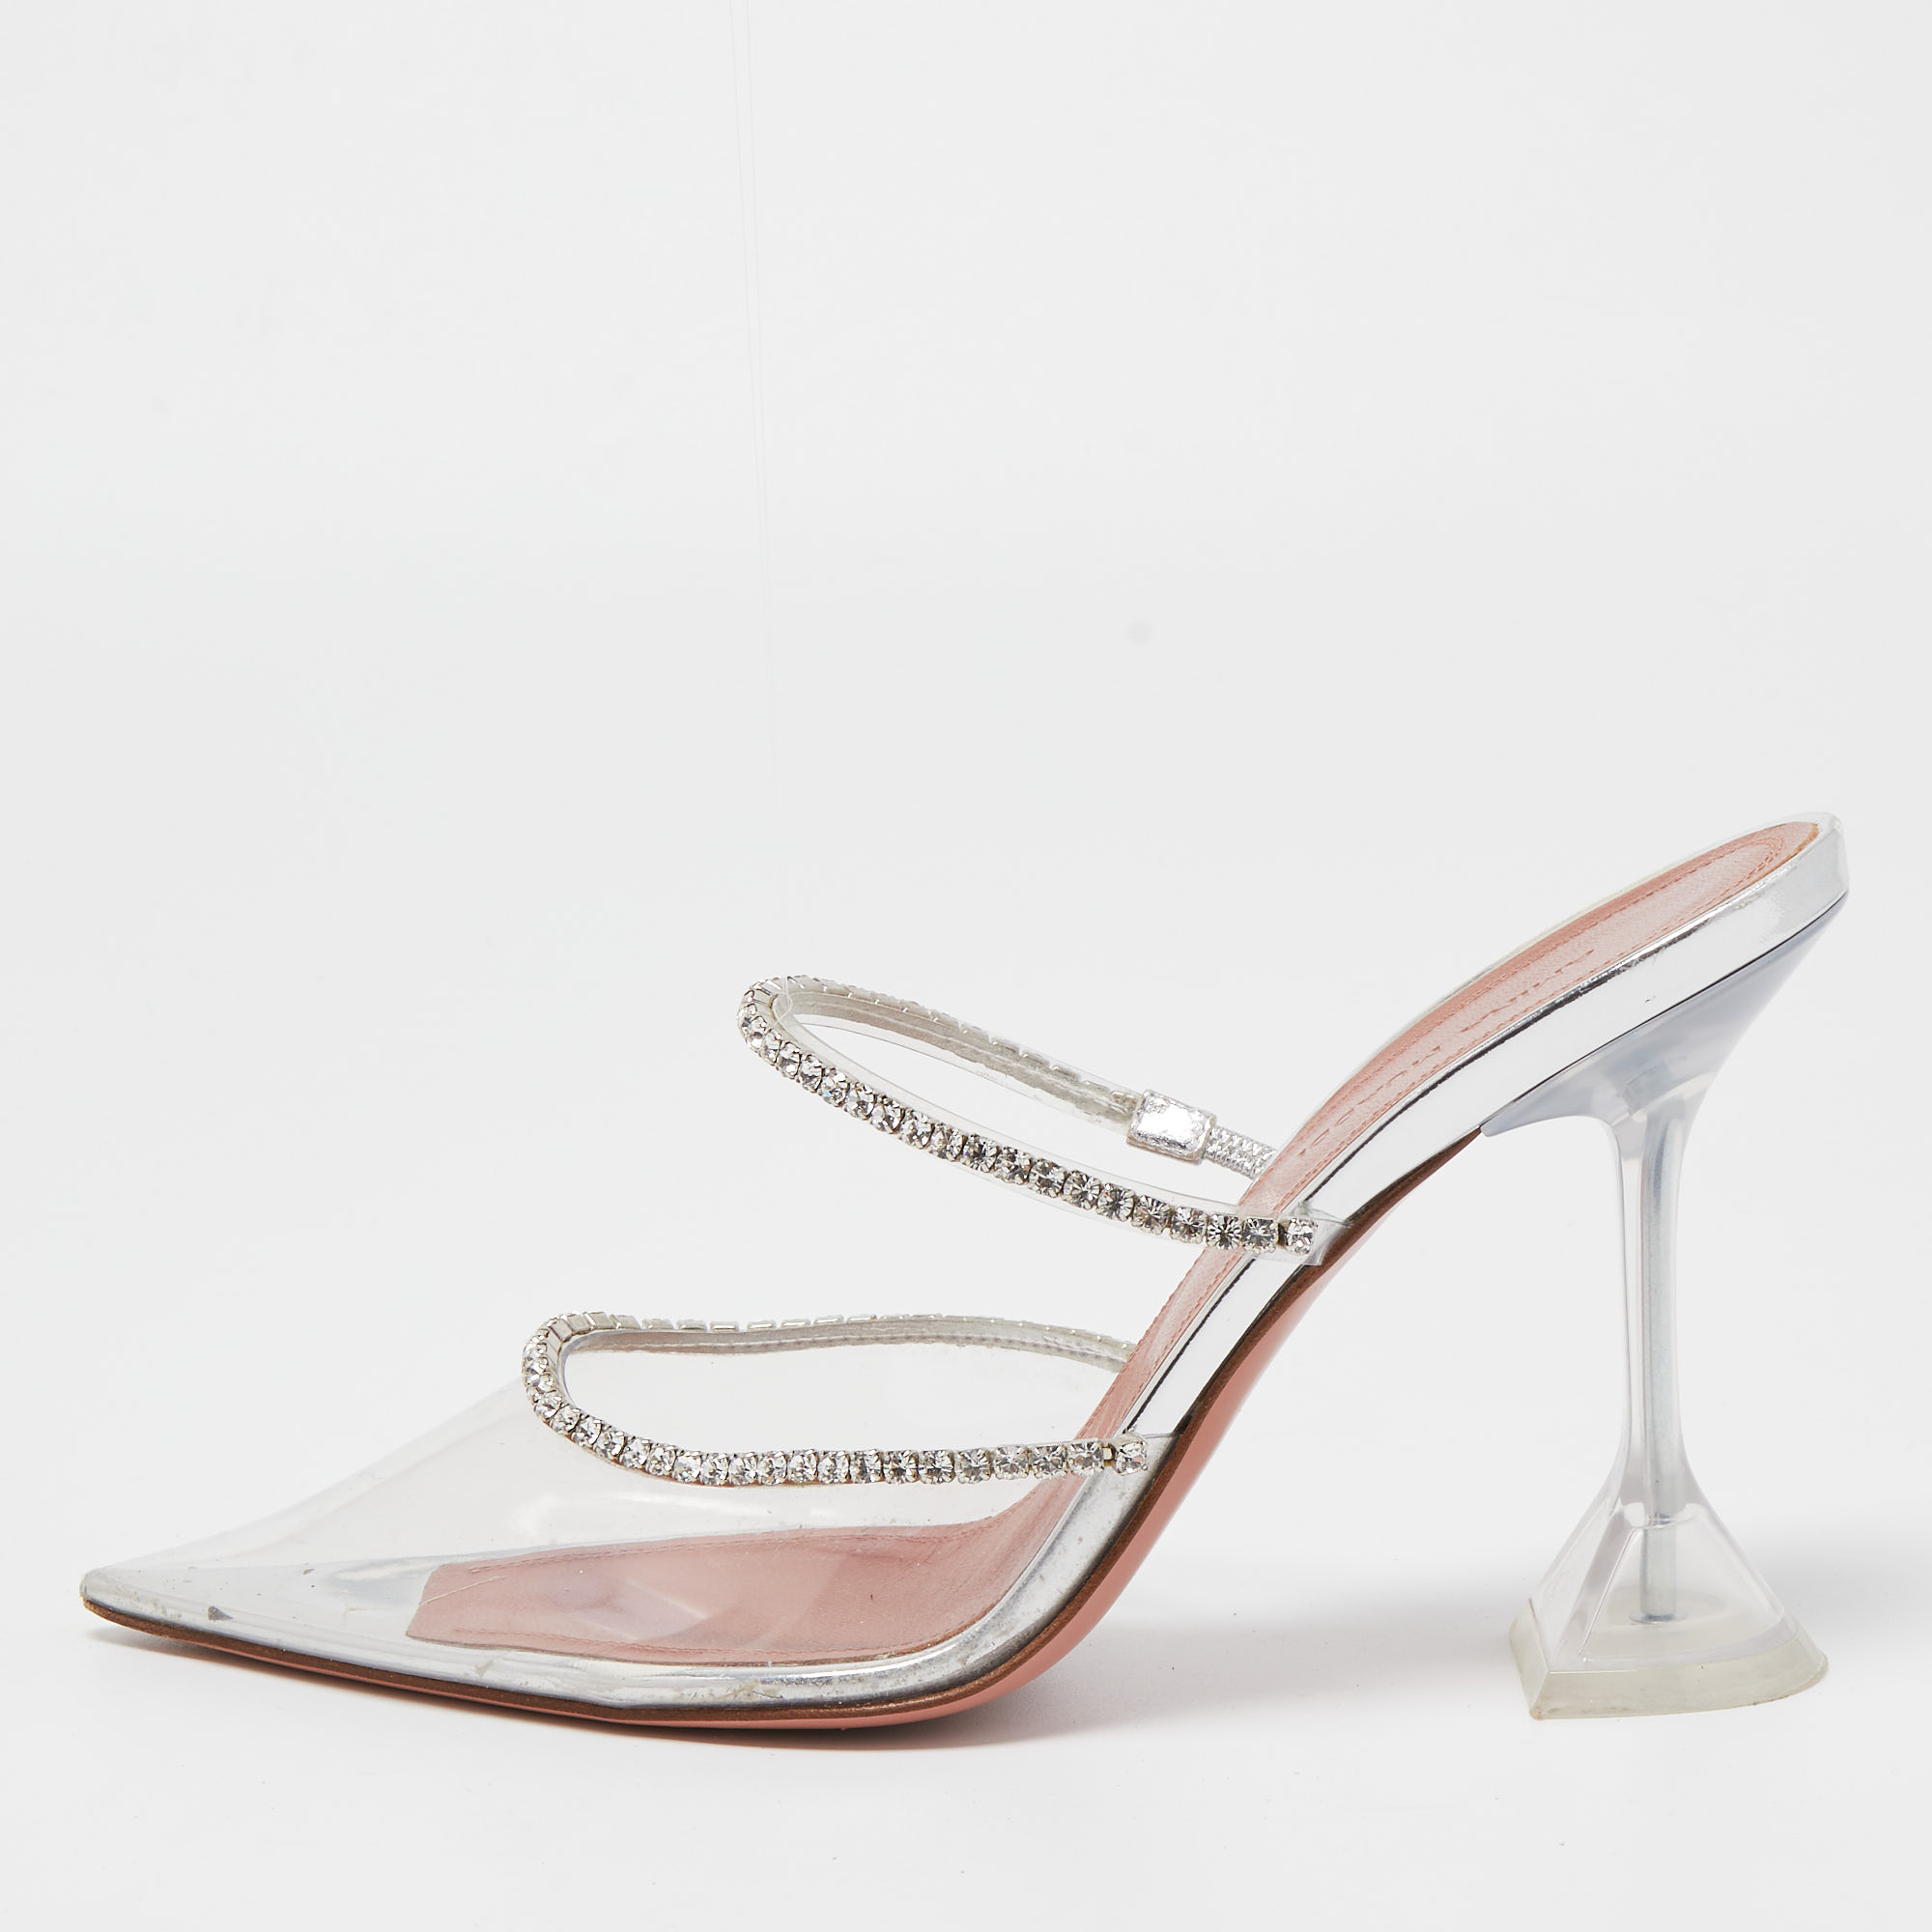 Amina Muaddi Transparent Crystal Embellished PVC Gilda Glass Pointed Toe Mules Size 38